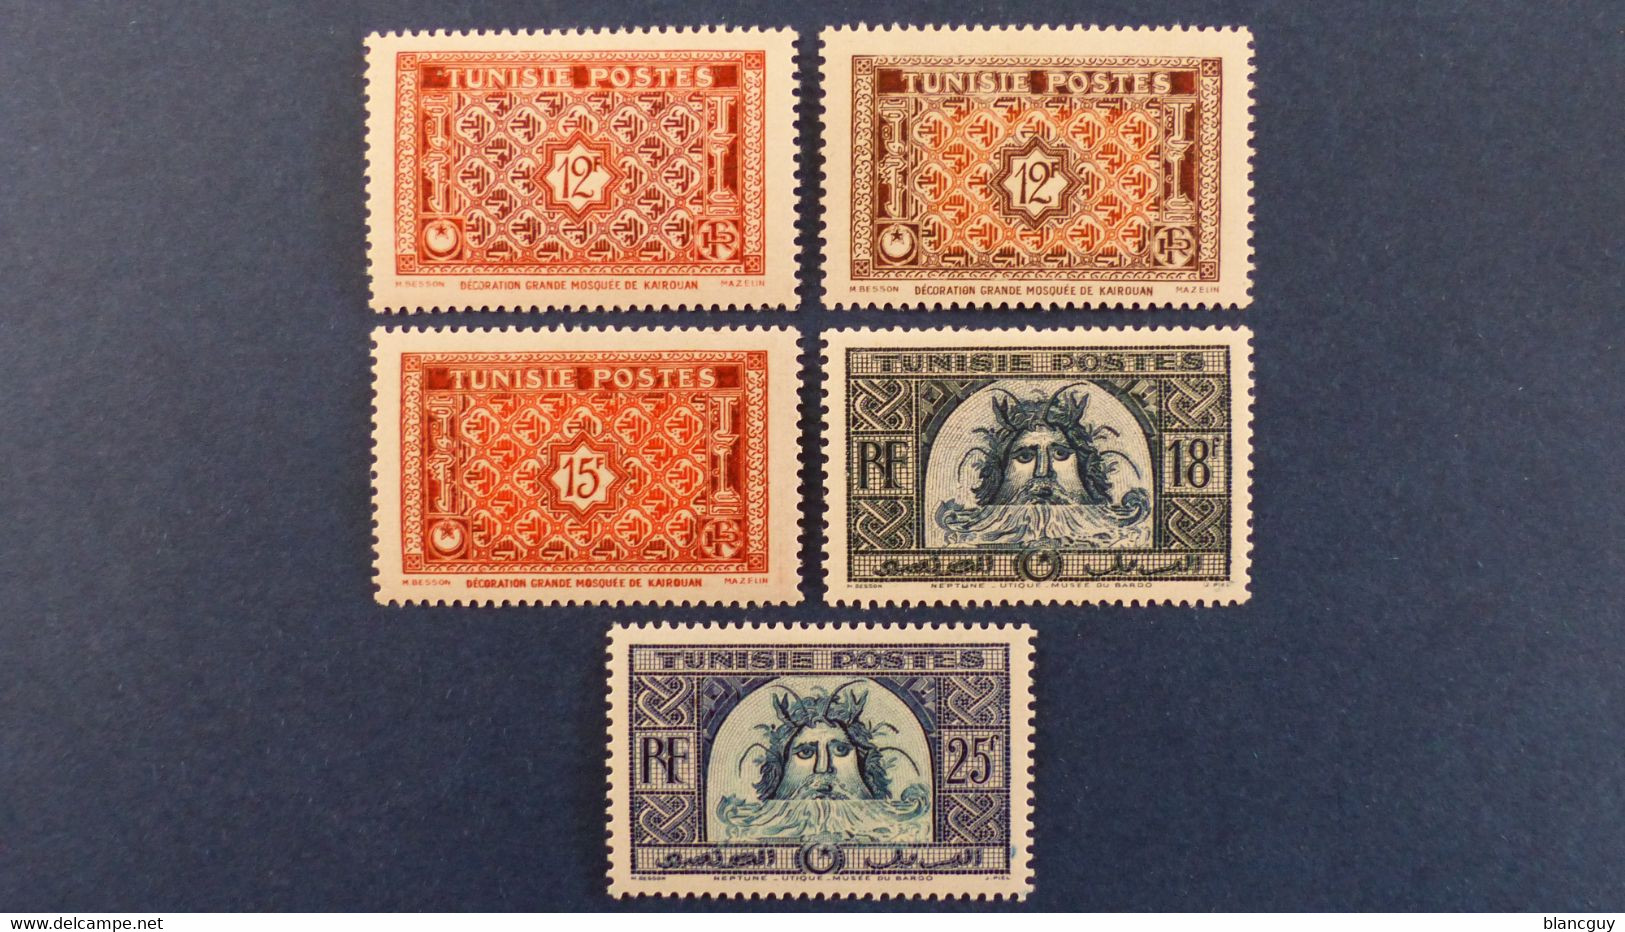 Tunisie - Année 1947 Complète - YT N° 311 - 312 - 313 - 314 à 319A - 320 à 323 * Neuf Avec Charnière - Unused Stamps